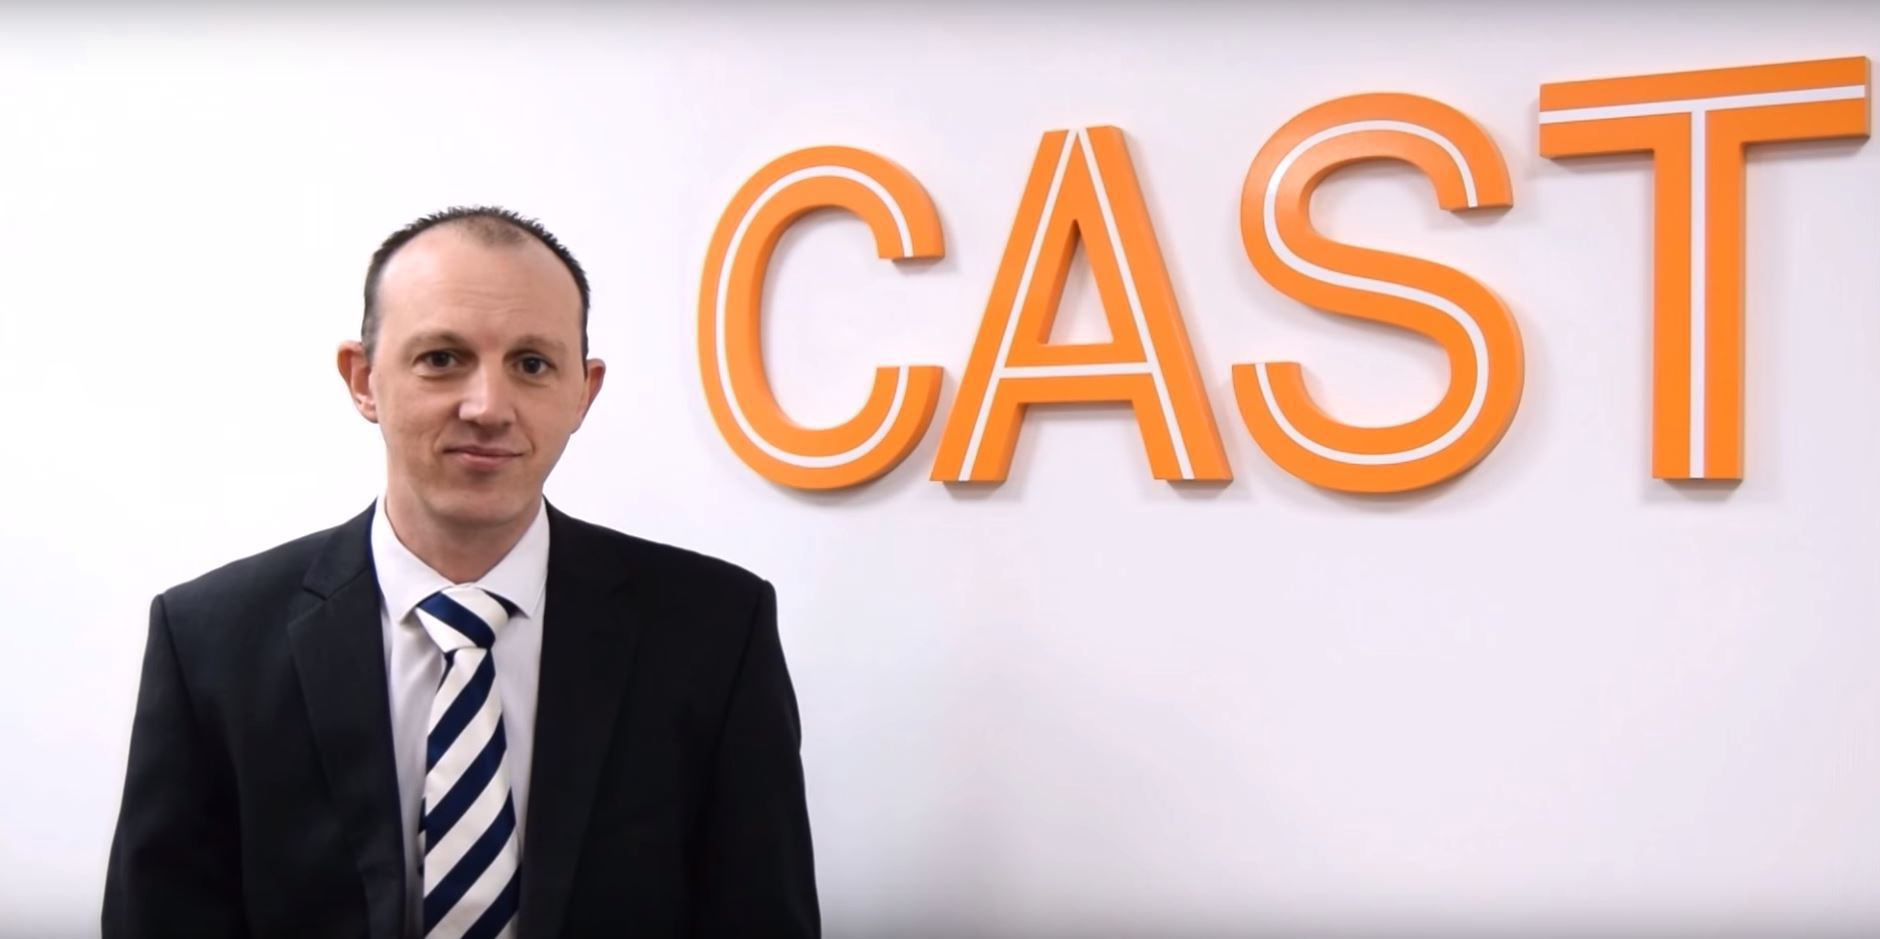 Hot seat: Senior consultant Gareth Dixon talks about working at Cast UK